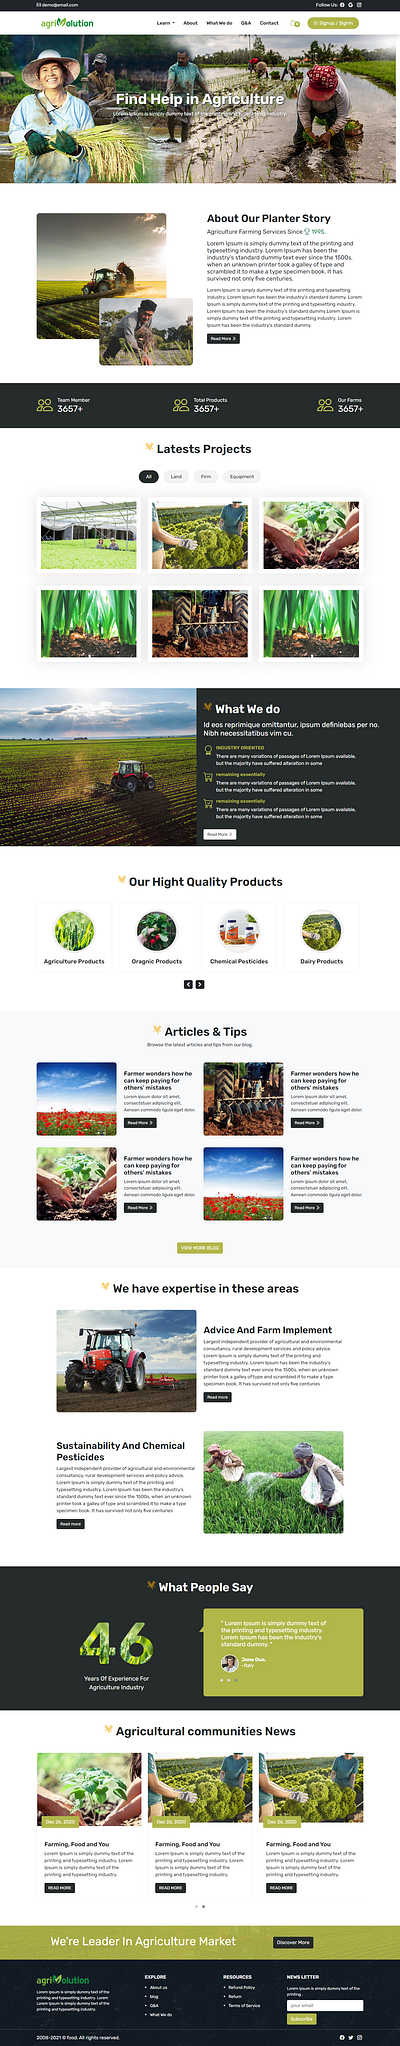 Agriculture - Landing Page Design agriculture design graphic design illustration mock up ui